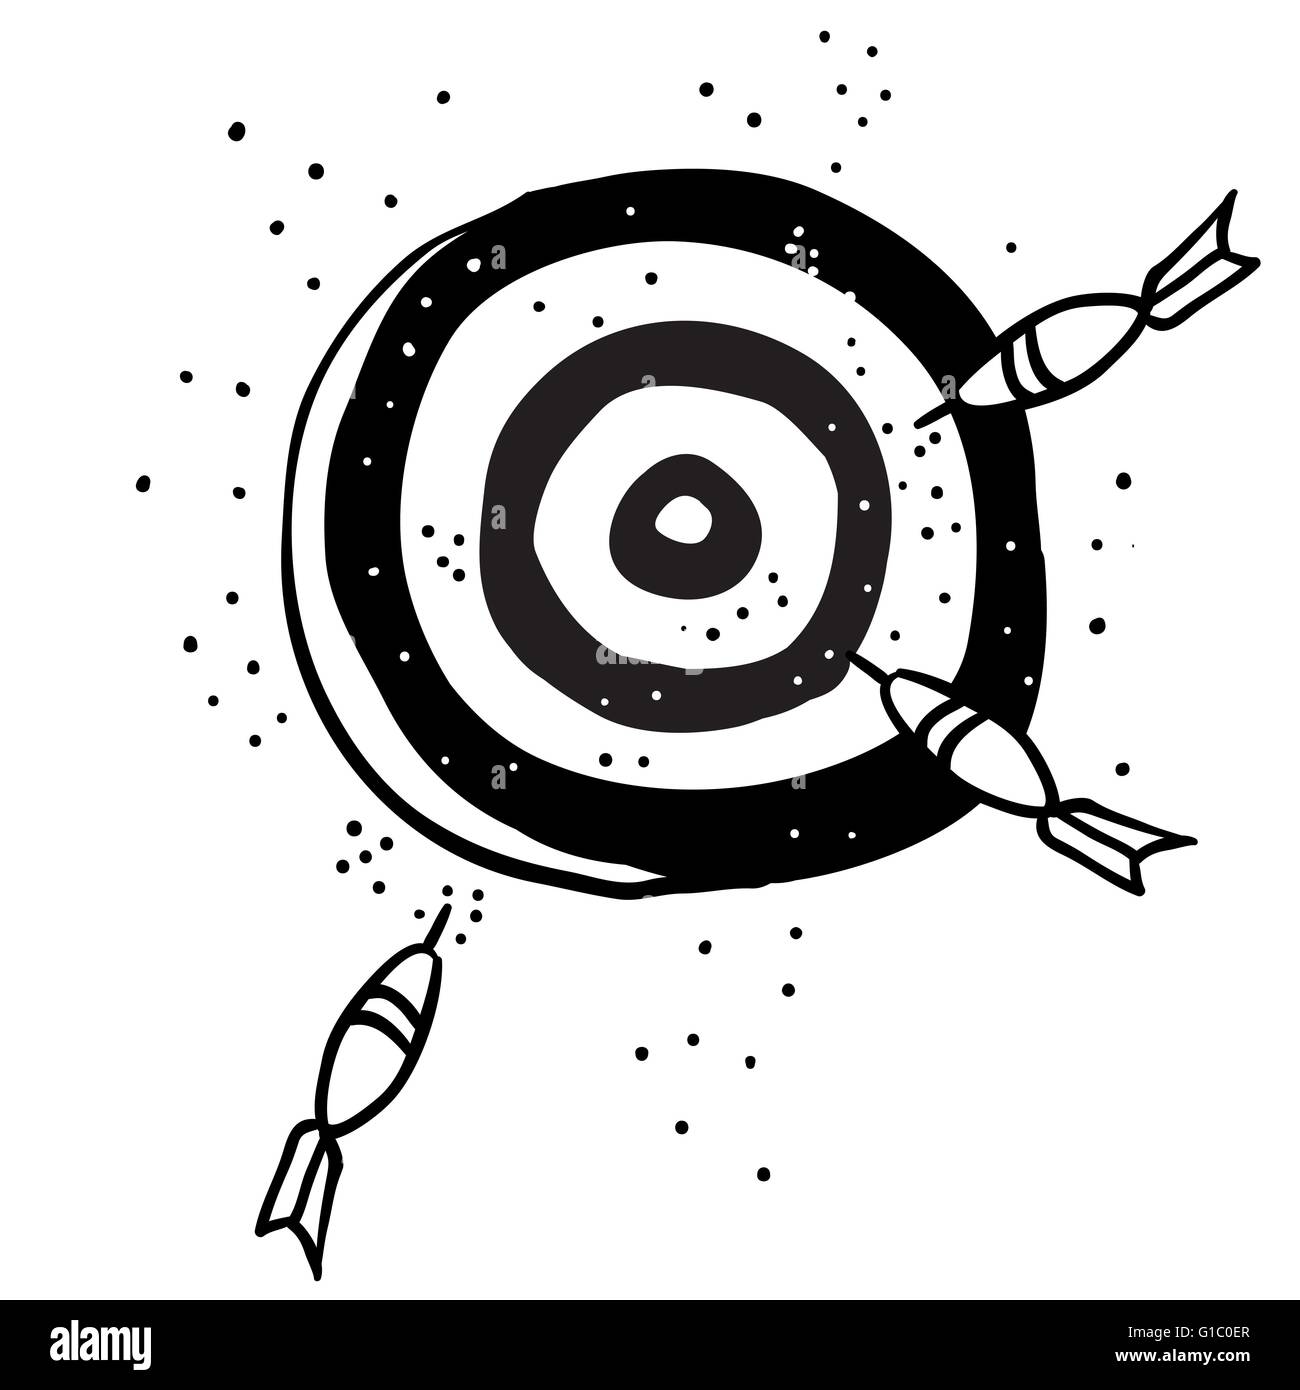 target with darts cartoon doodle Stock Vector Image & Art - Alamy